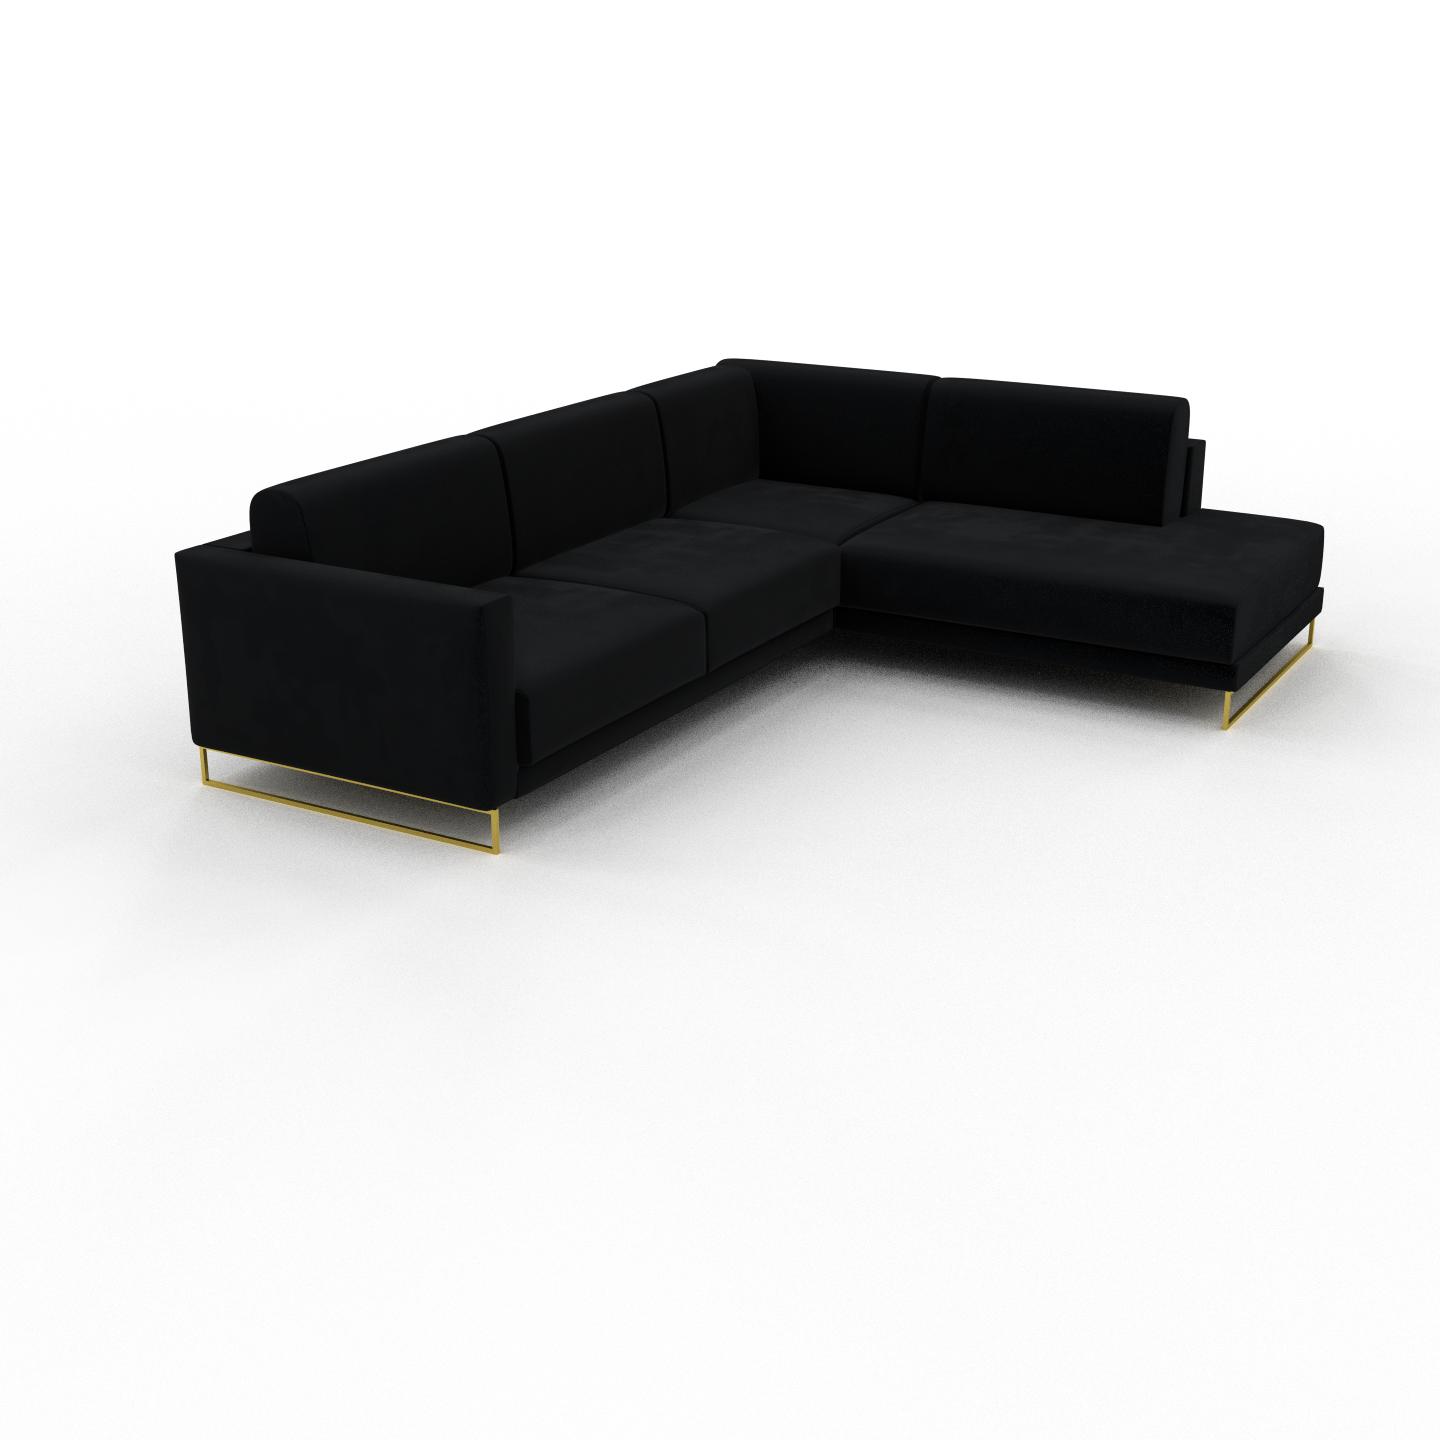 MYCS Ecksofa Samt Schwarz, mit Gold - Flexible Designer-Polsterecke, L-Form: Beste Qualität, einzigartiges Design - 214 x 75 x 266 cm, konfigurierbar